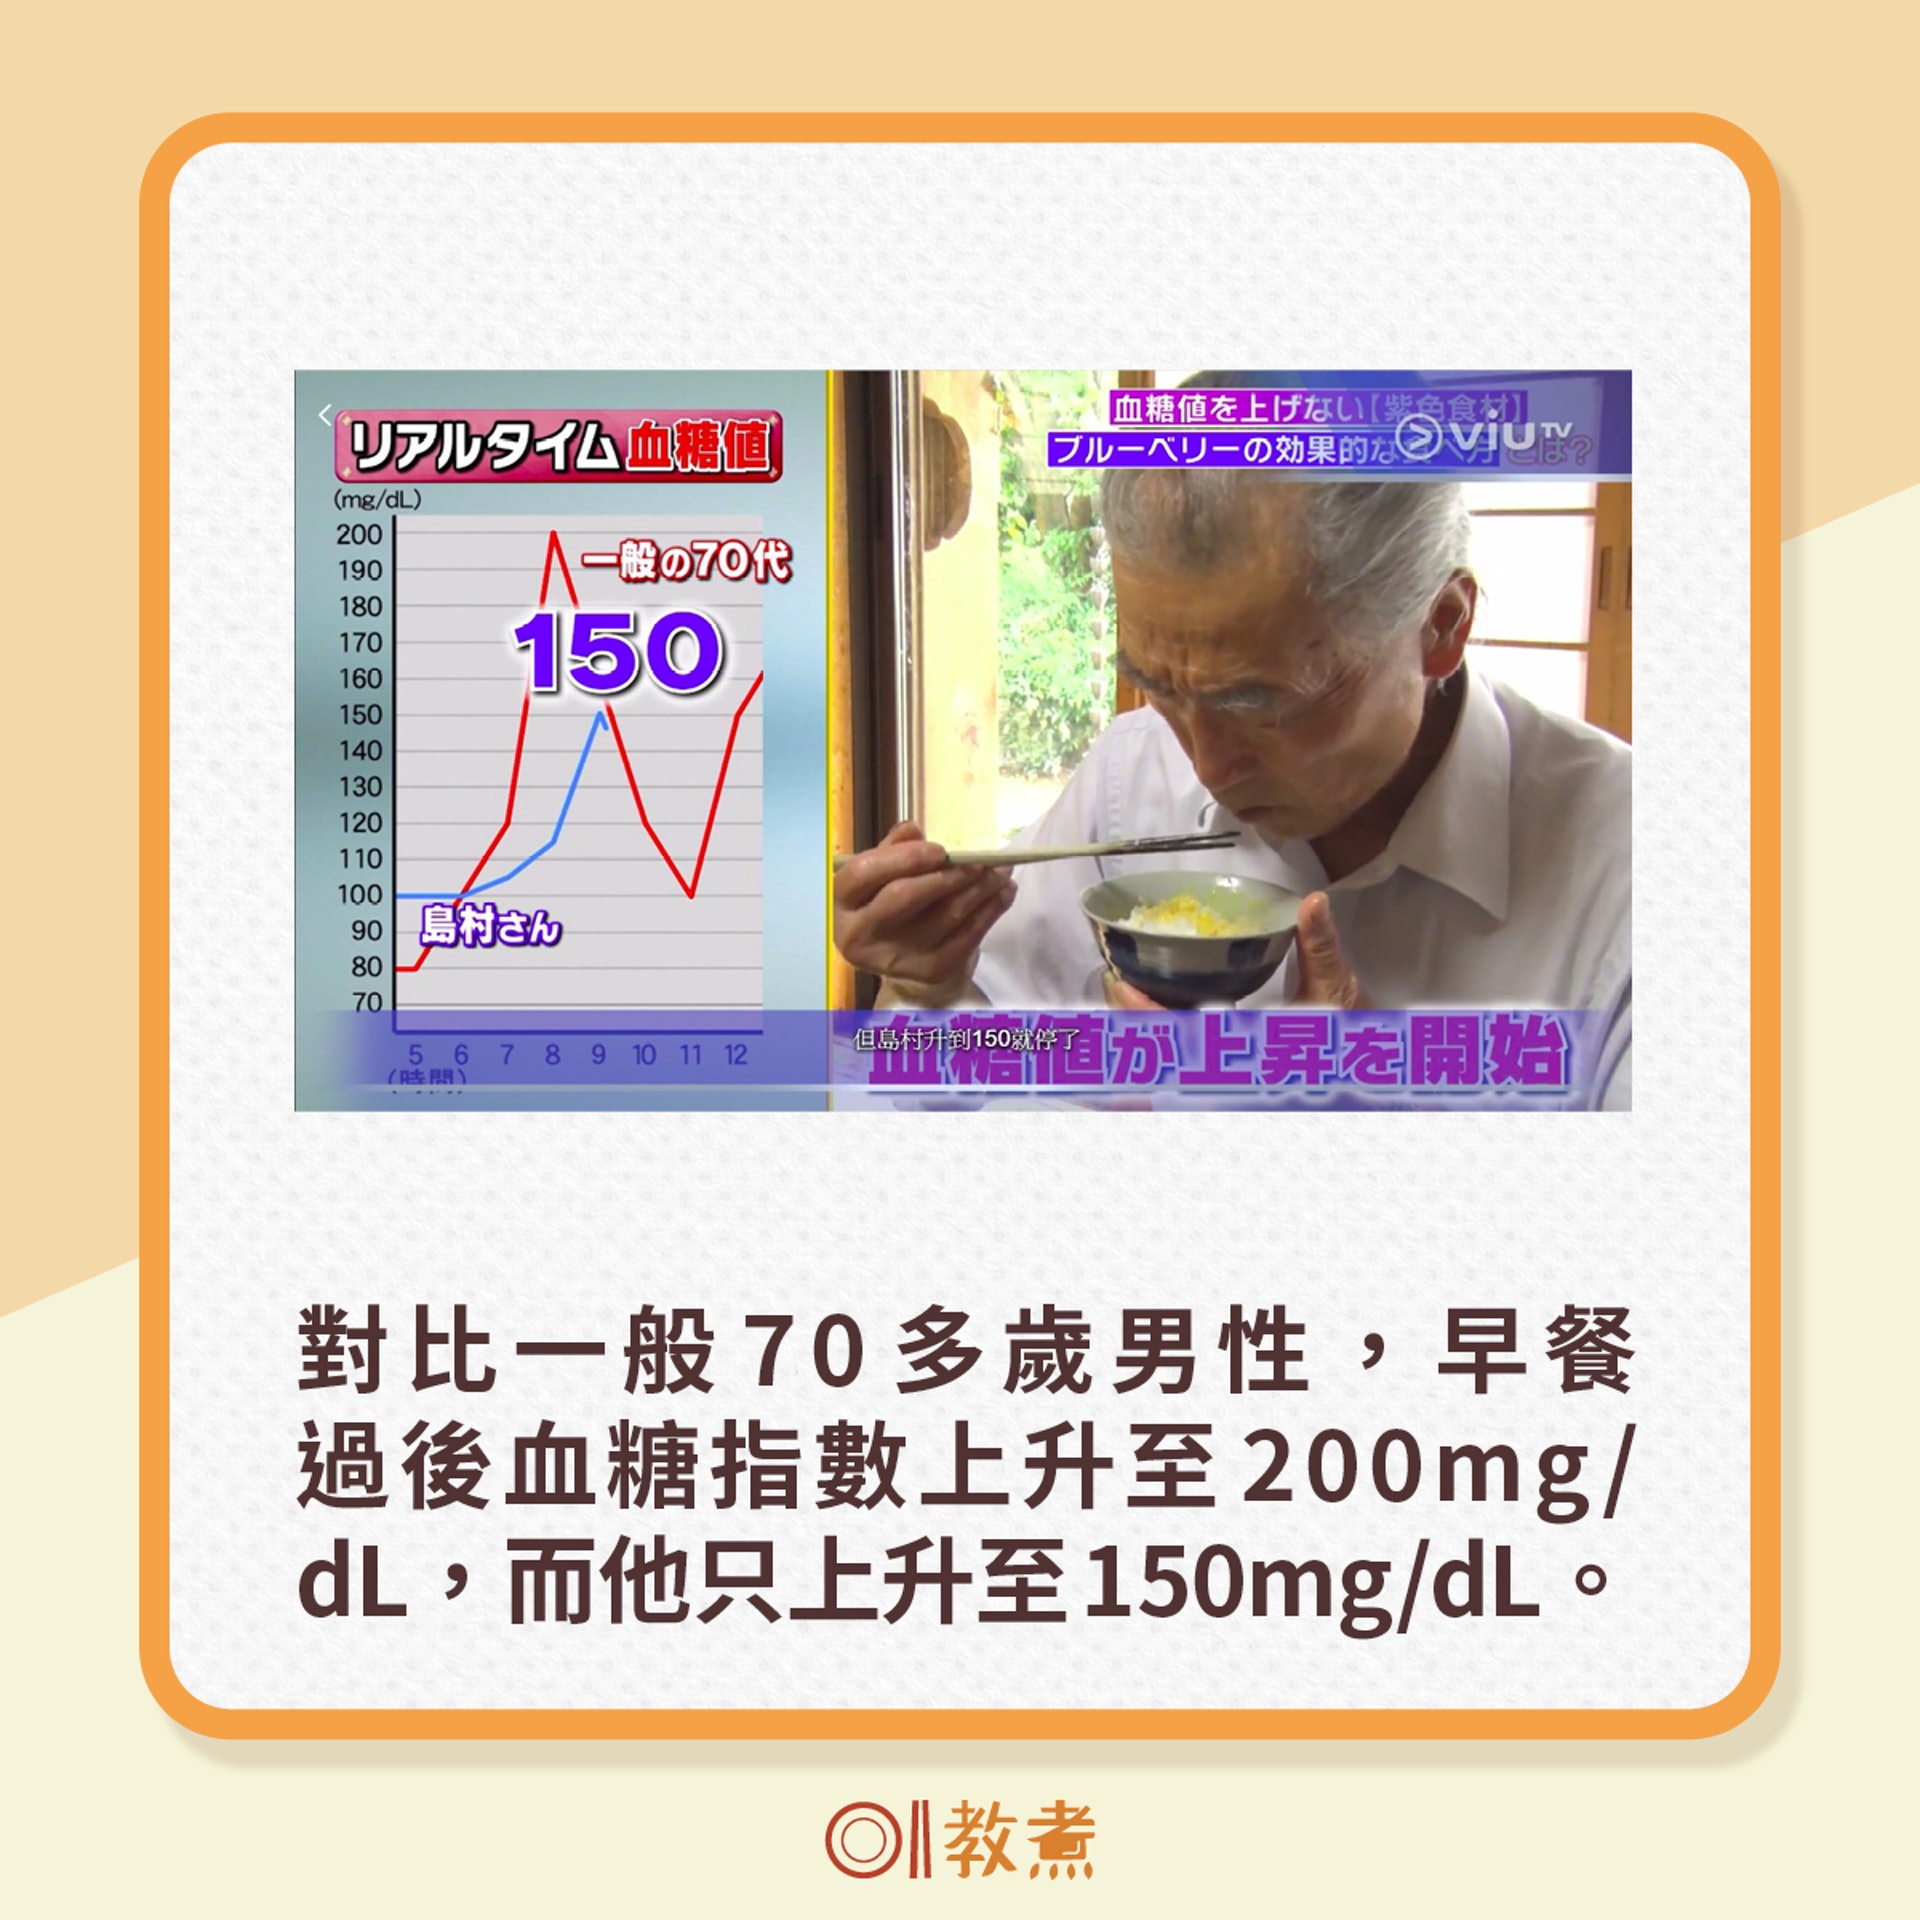 對比一般70多歲男性，早餐過後血糖指數上升至200mg/dL，而他只上升至150mg/dL。（電視節目《恐怖醫學》截圖）